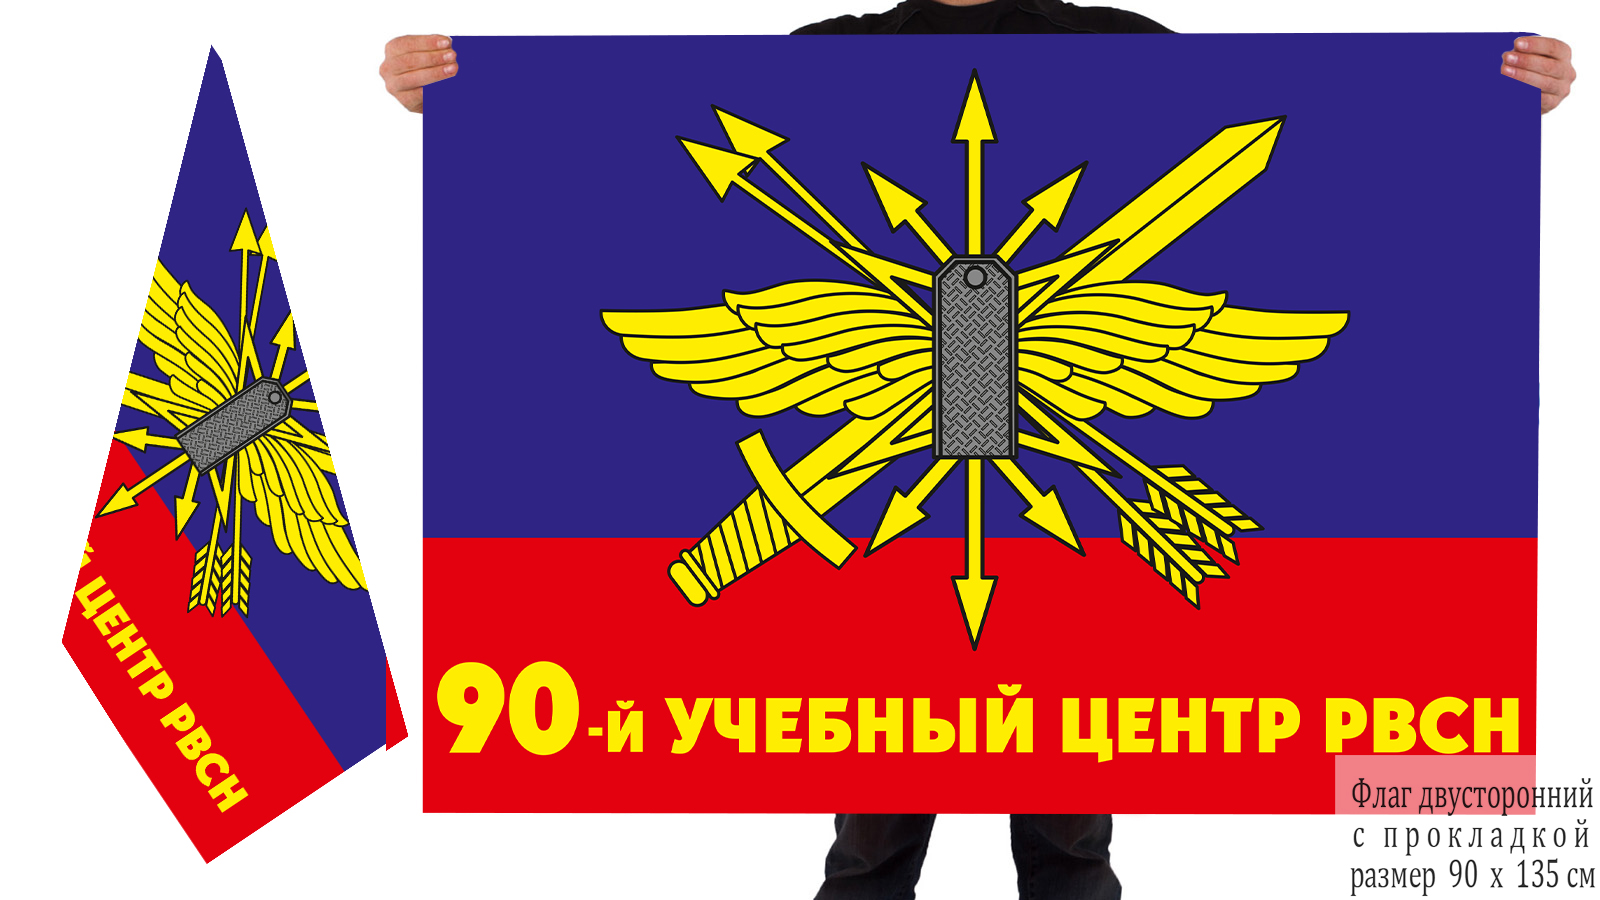 Знамя 90-го учебного центра РВСН